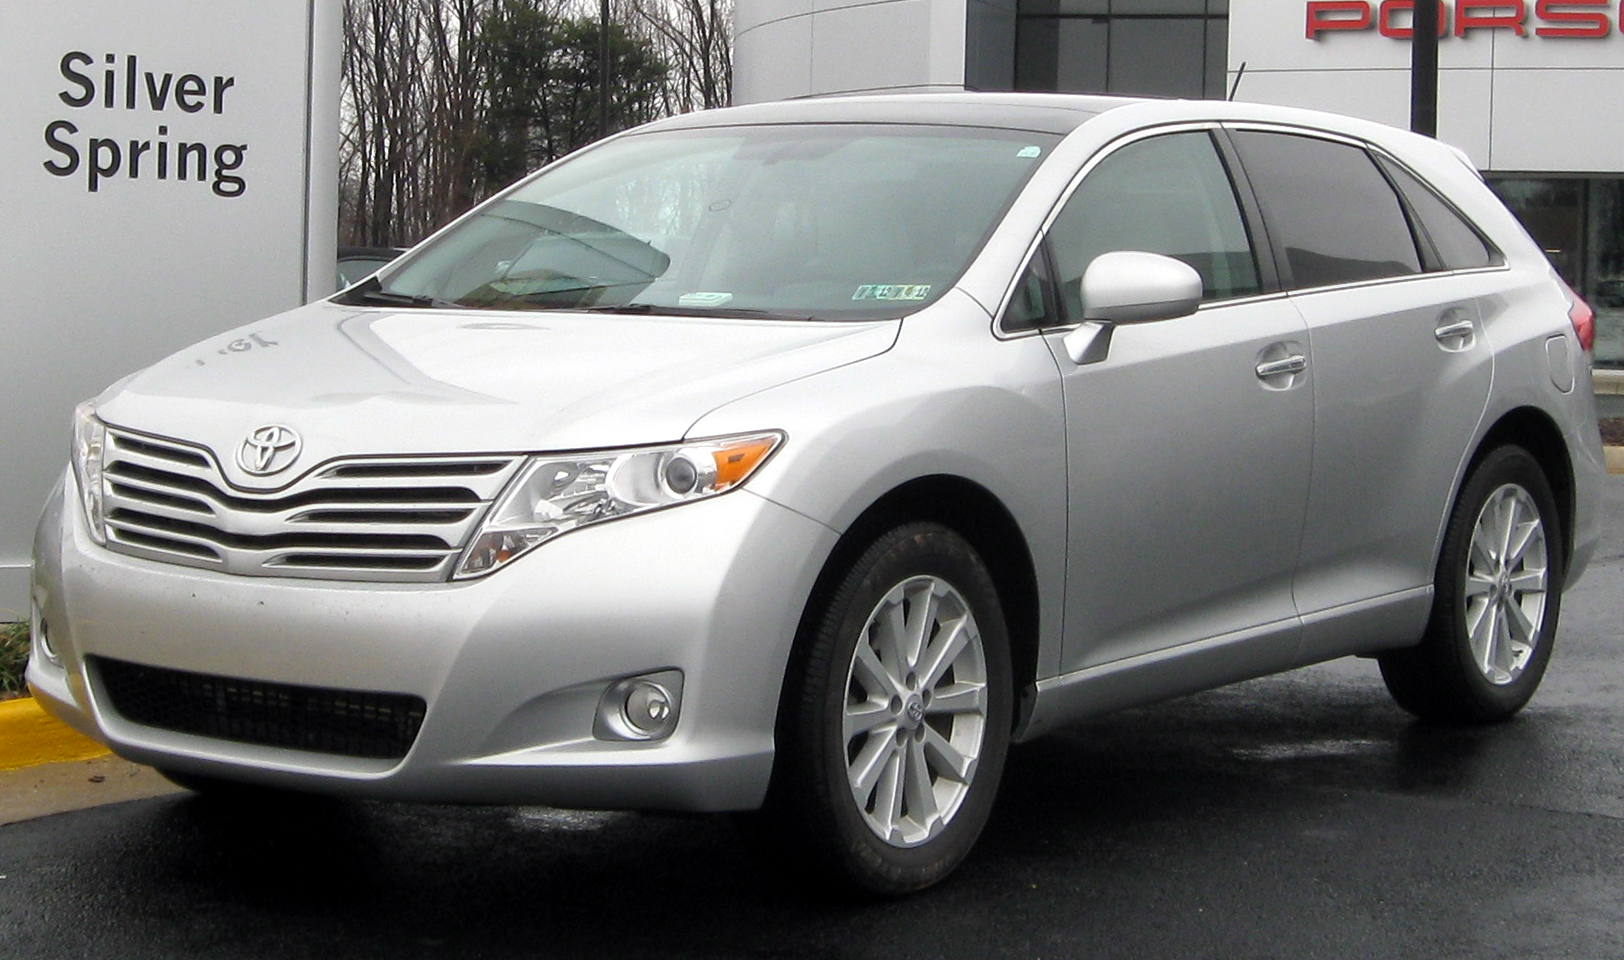 2012 Toyota venza dimensions